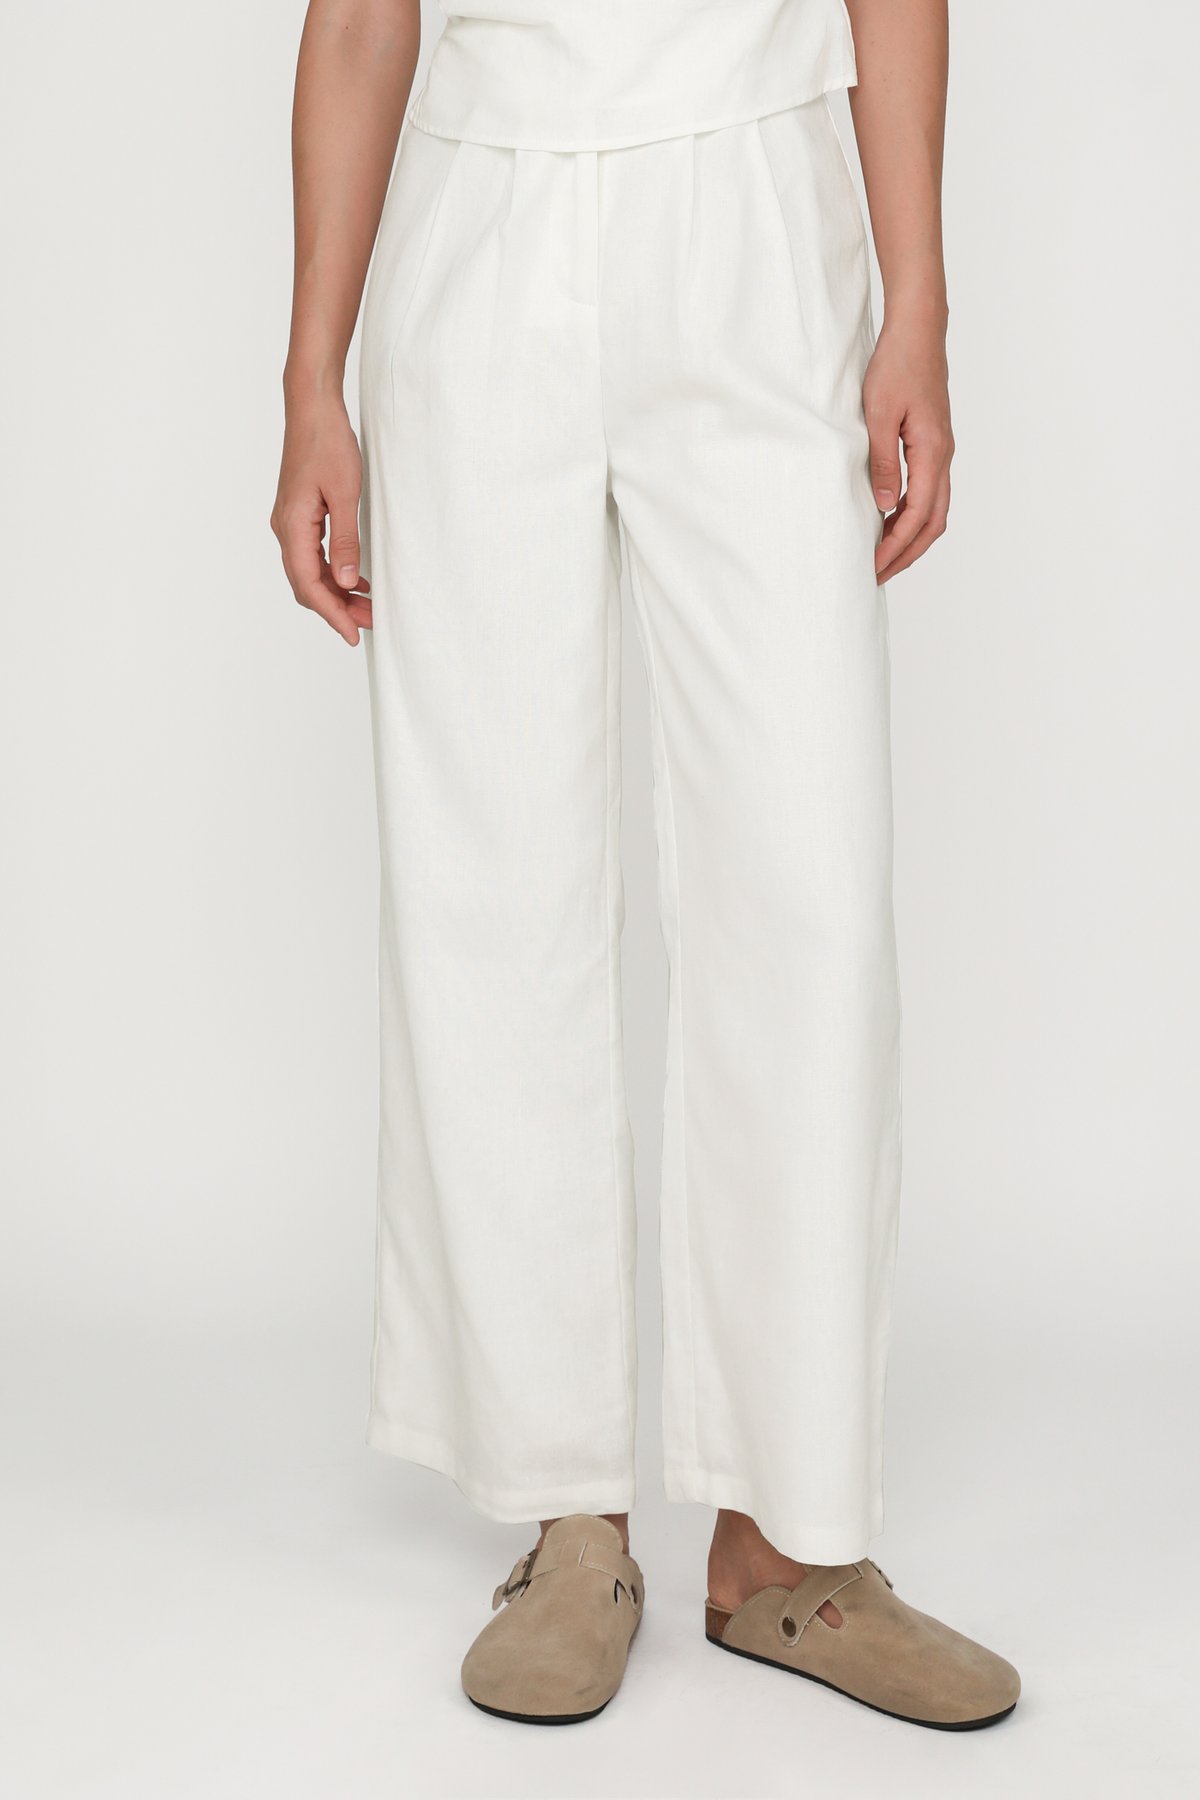 Kason Pleated Linen Pants (White)